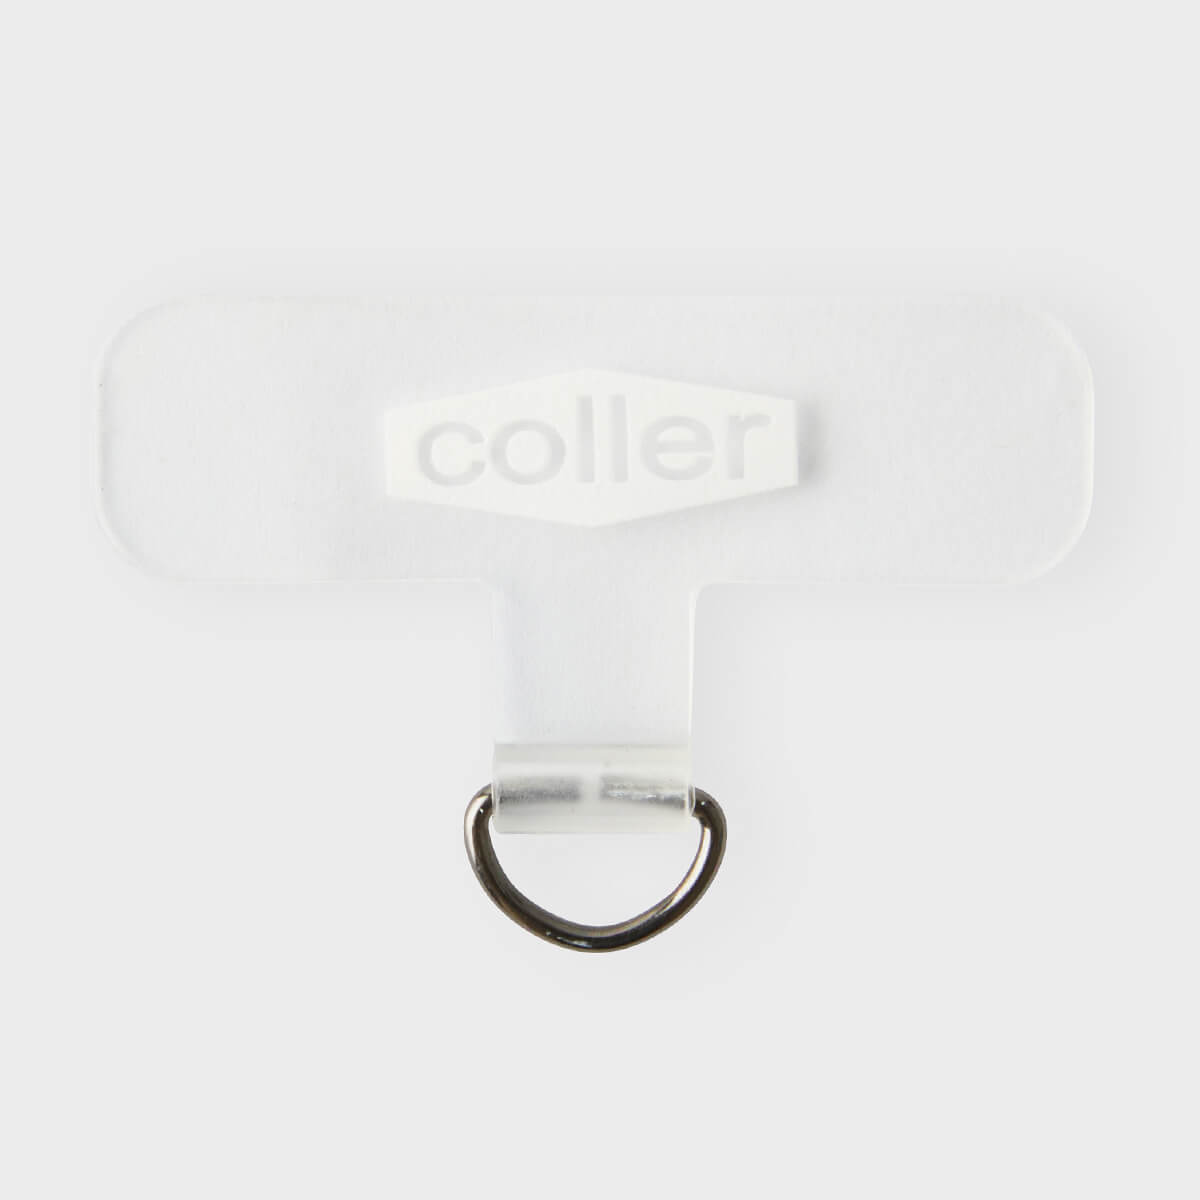 COLLER Strap Holder White